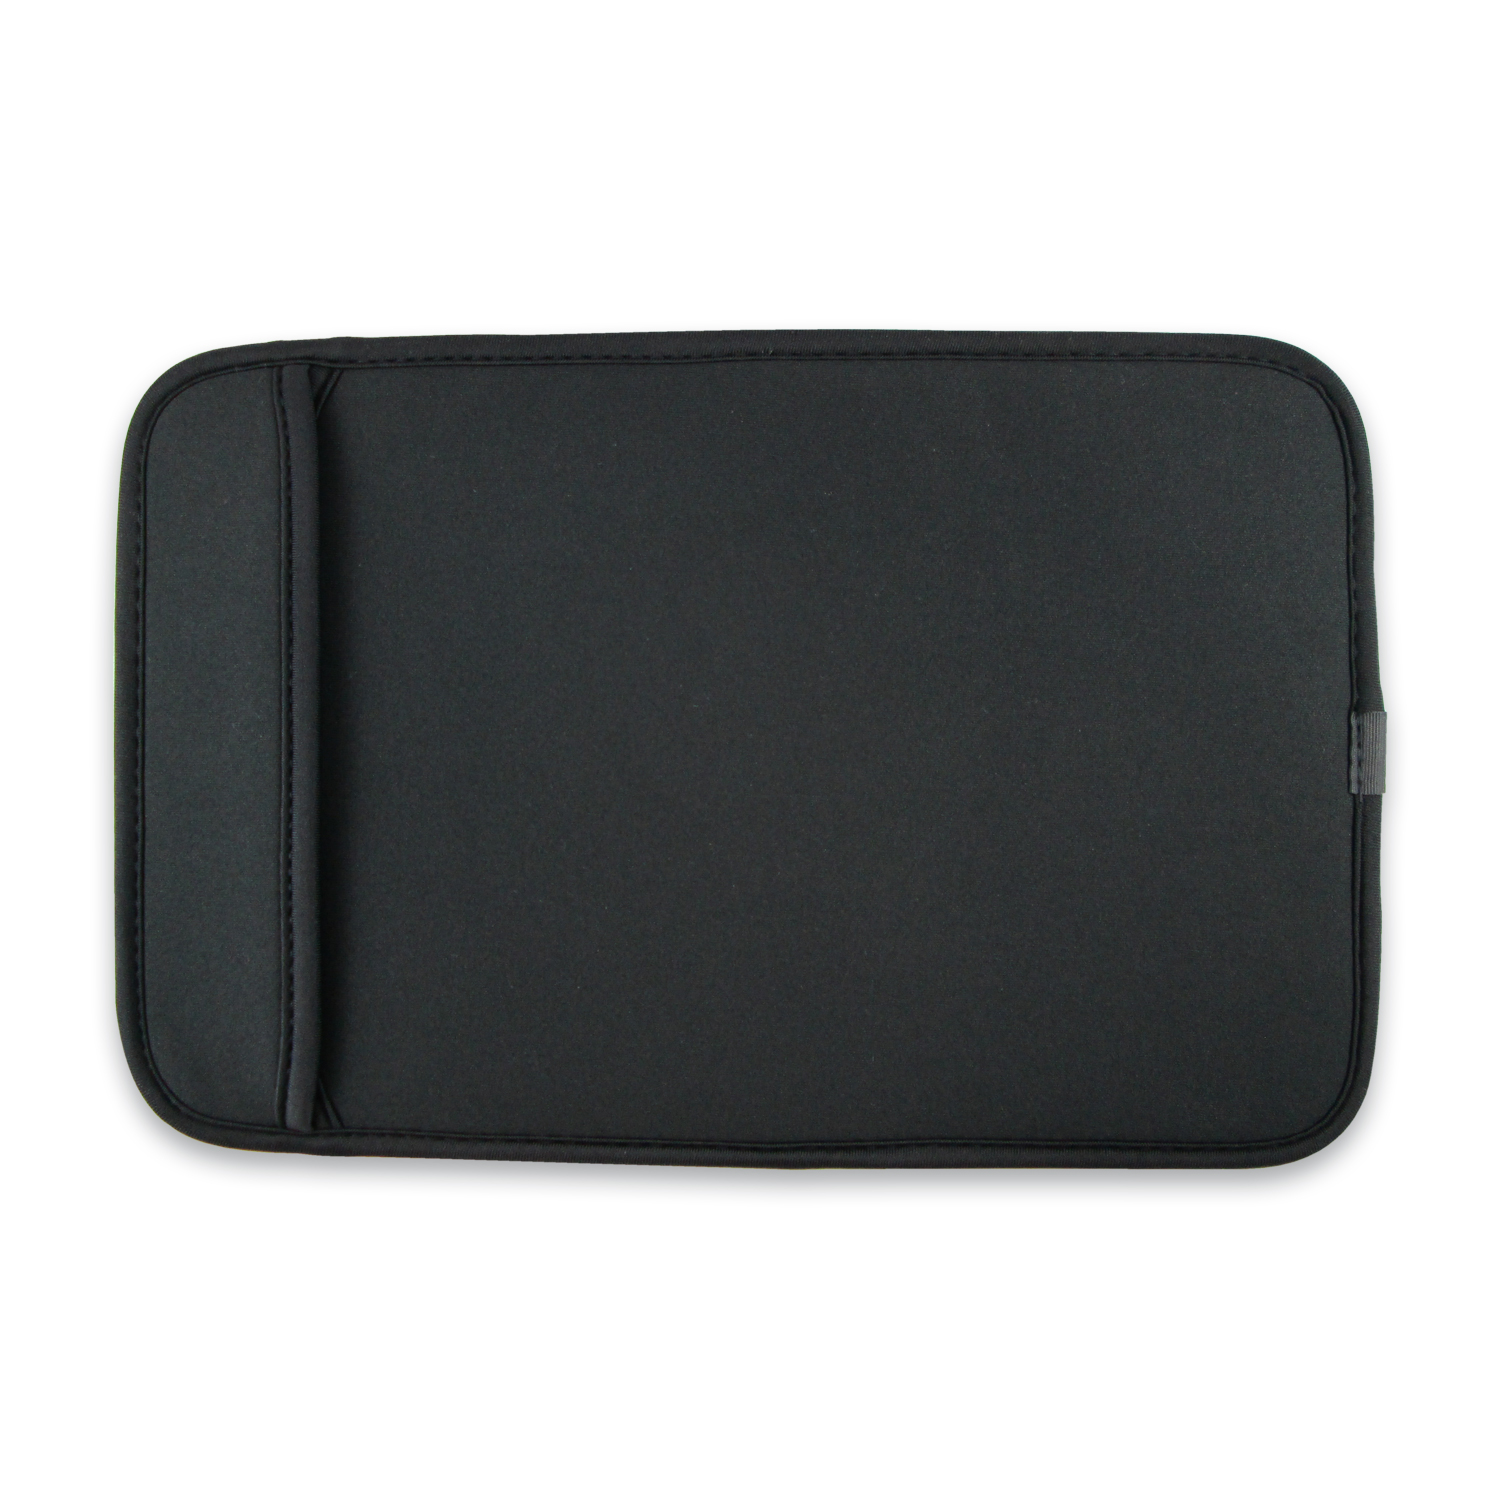 TrekStor Neopren Tasche für 10 Zoll Tablets schwarz